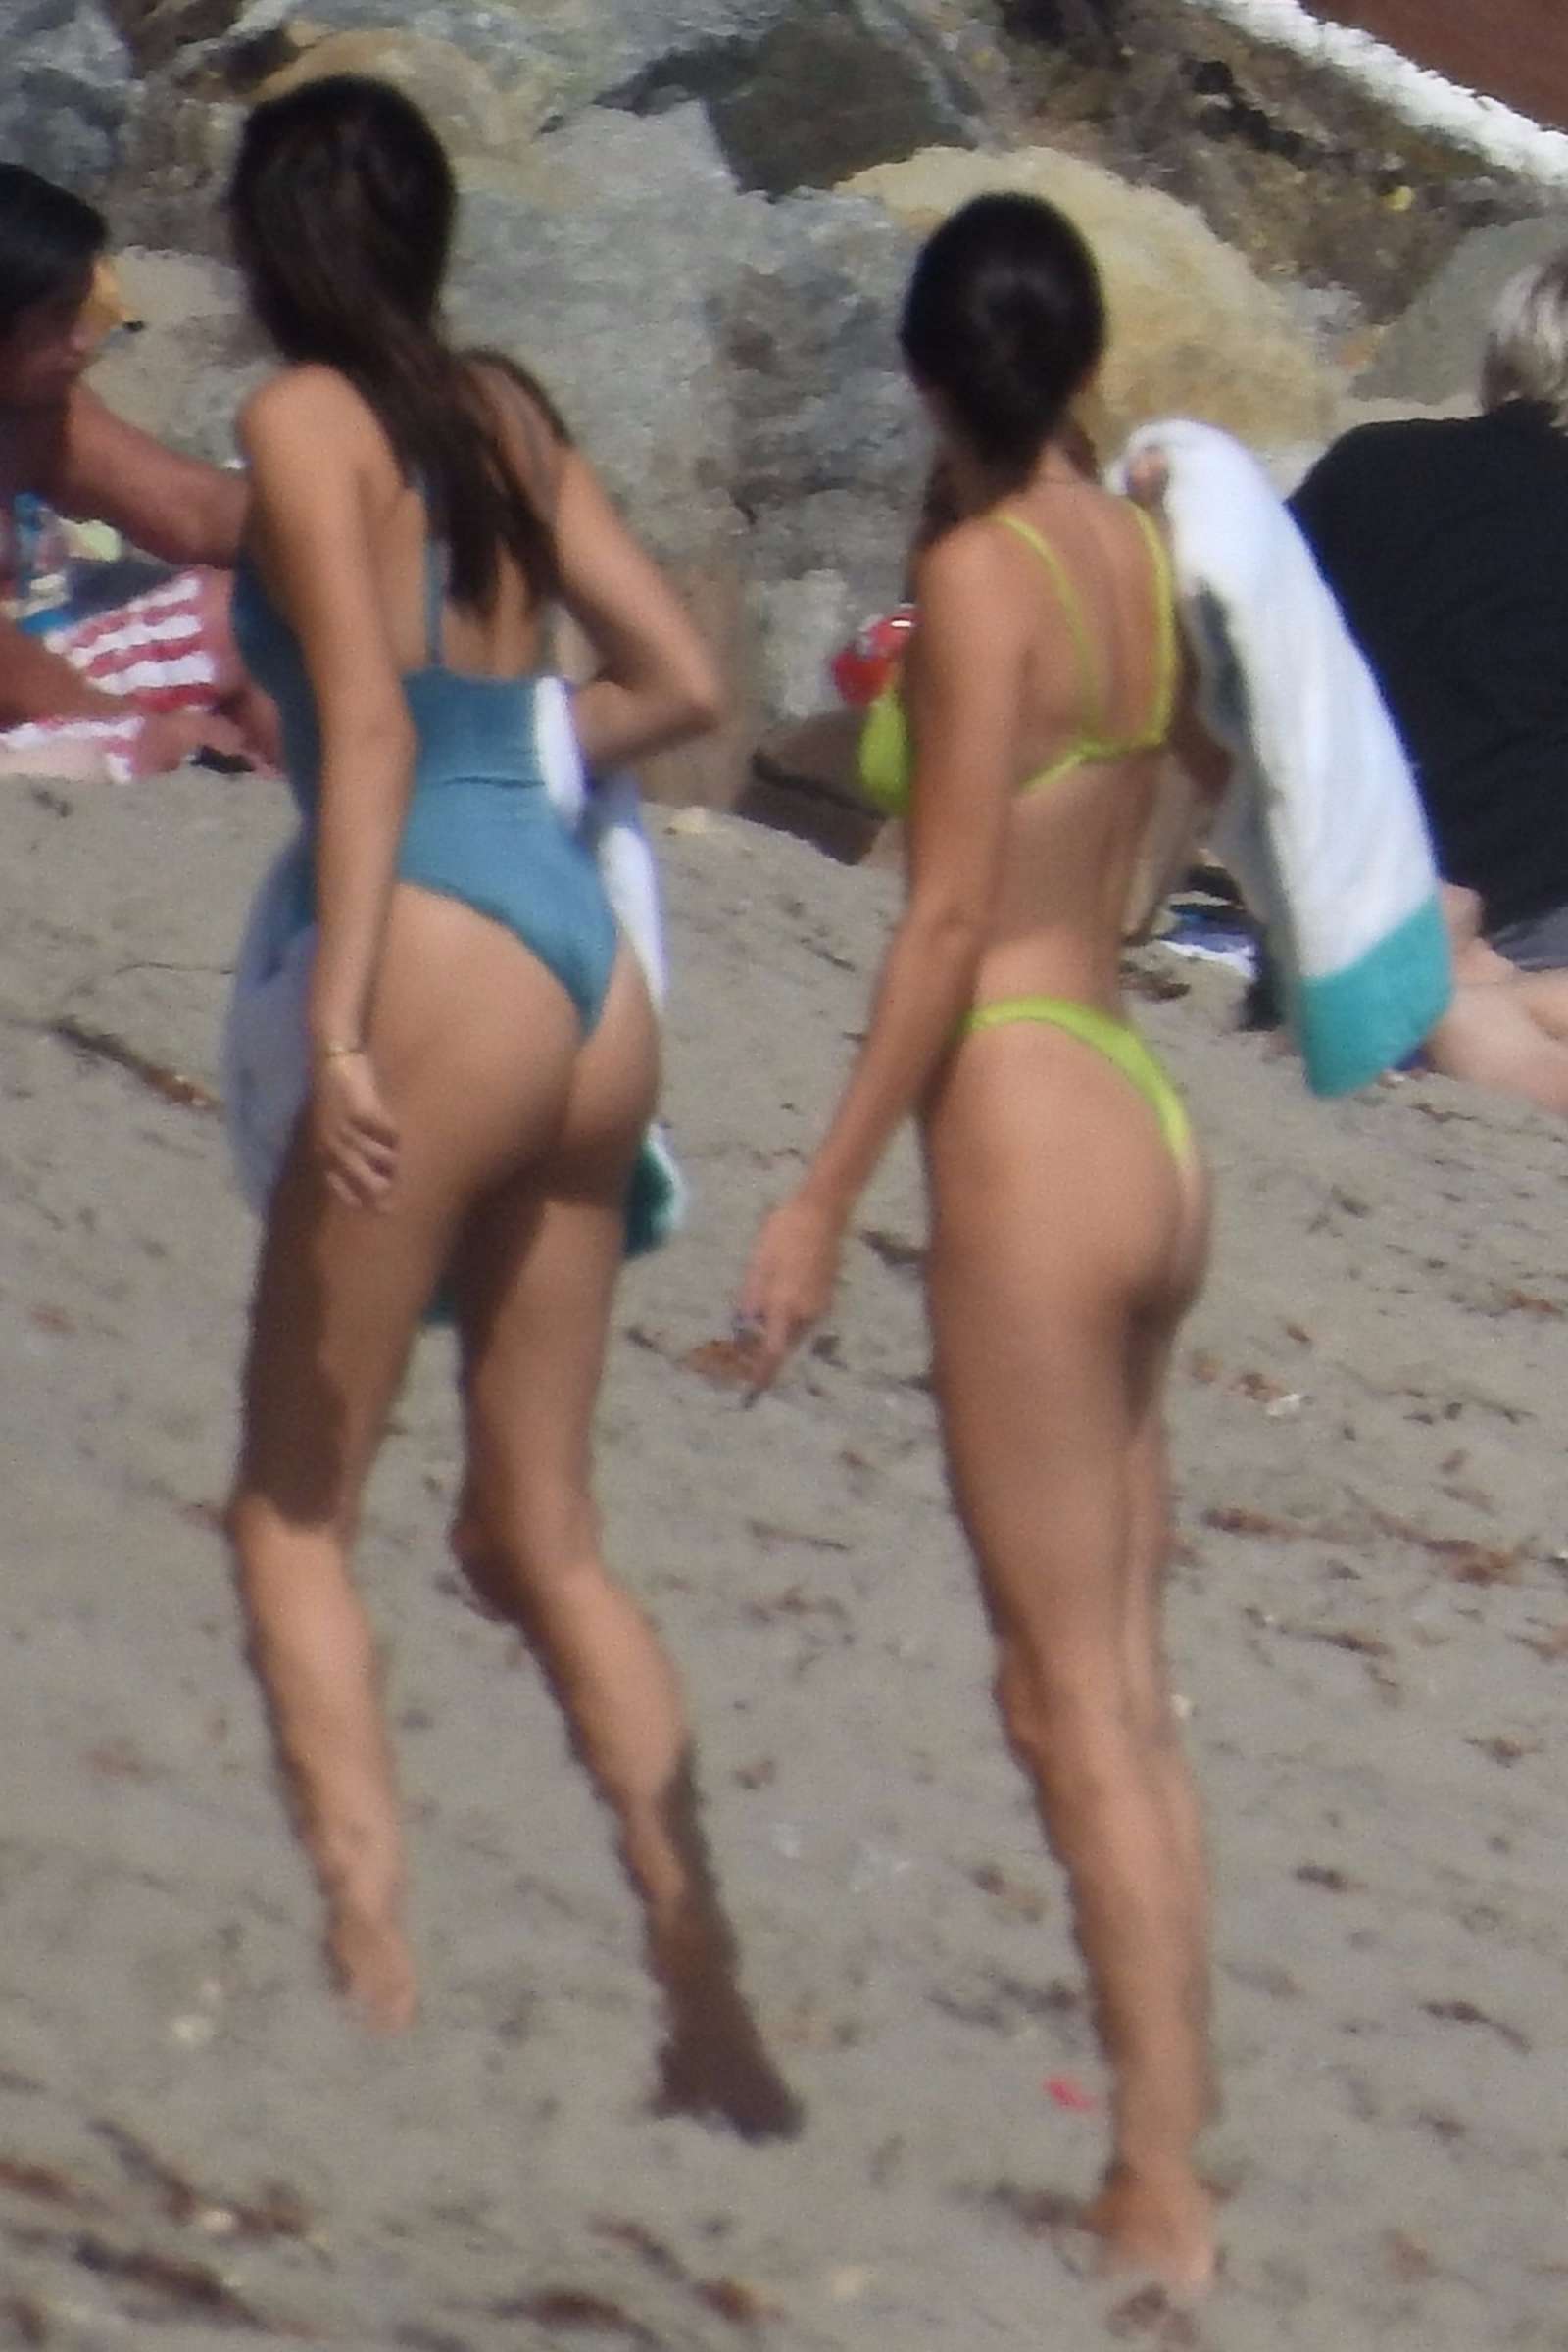 Kendall Jenner in a skimpy neon green bikini on the beach in Malibu